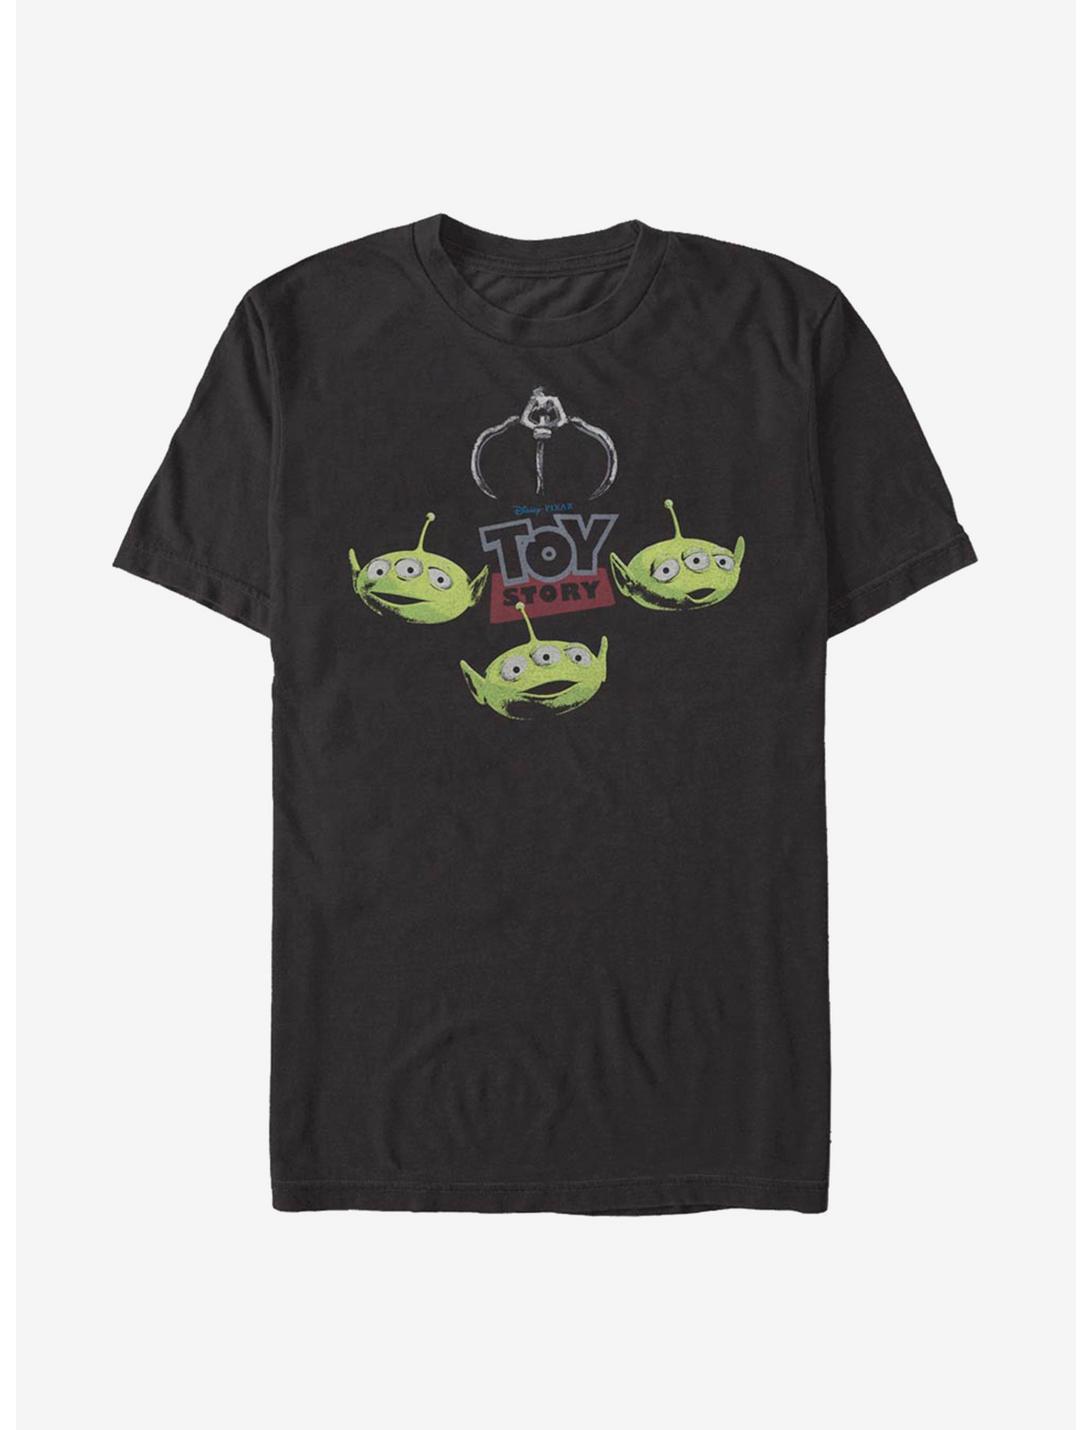 Disney Pixar Toy Story Oooooh T-Shirt, BLACK, hi-res